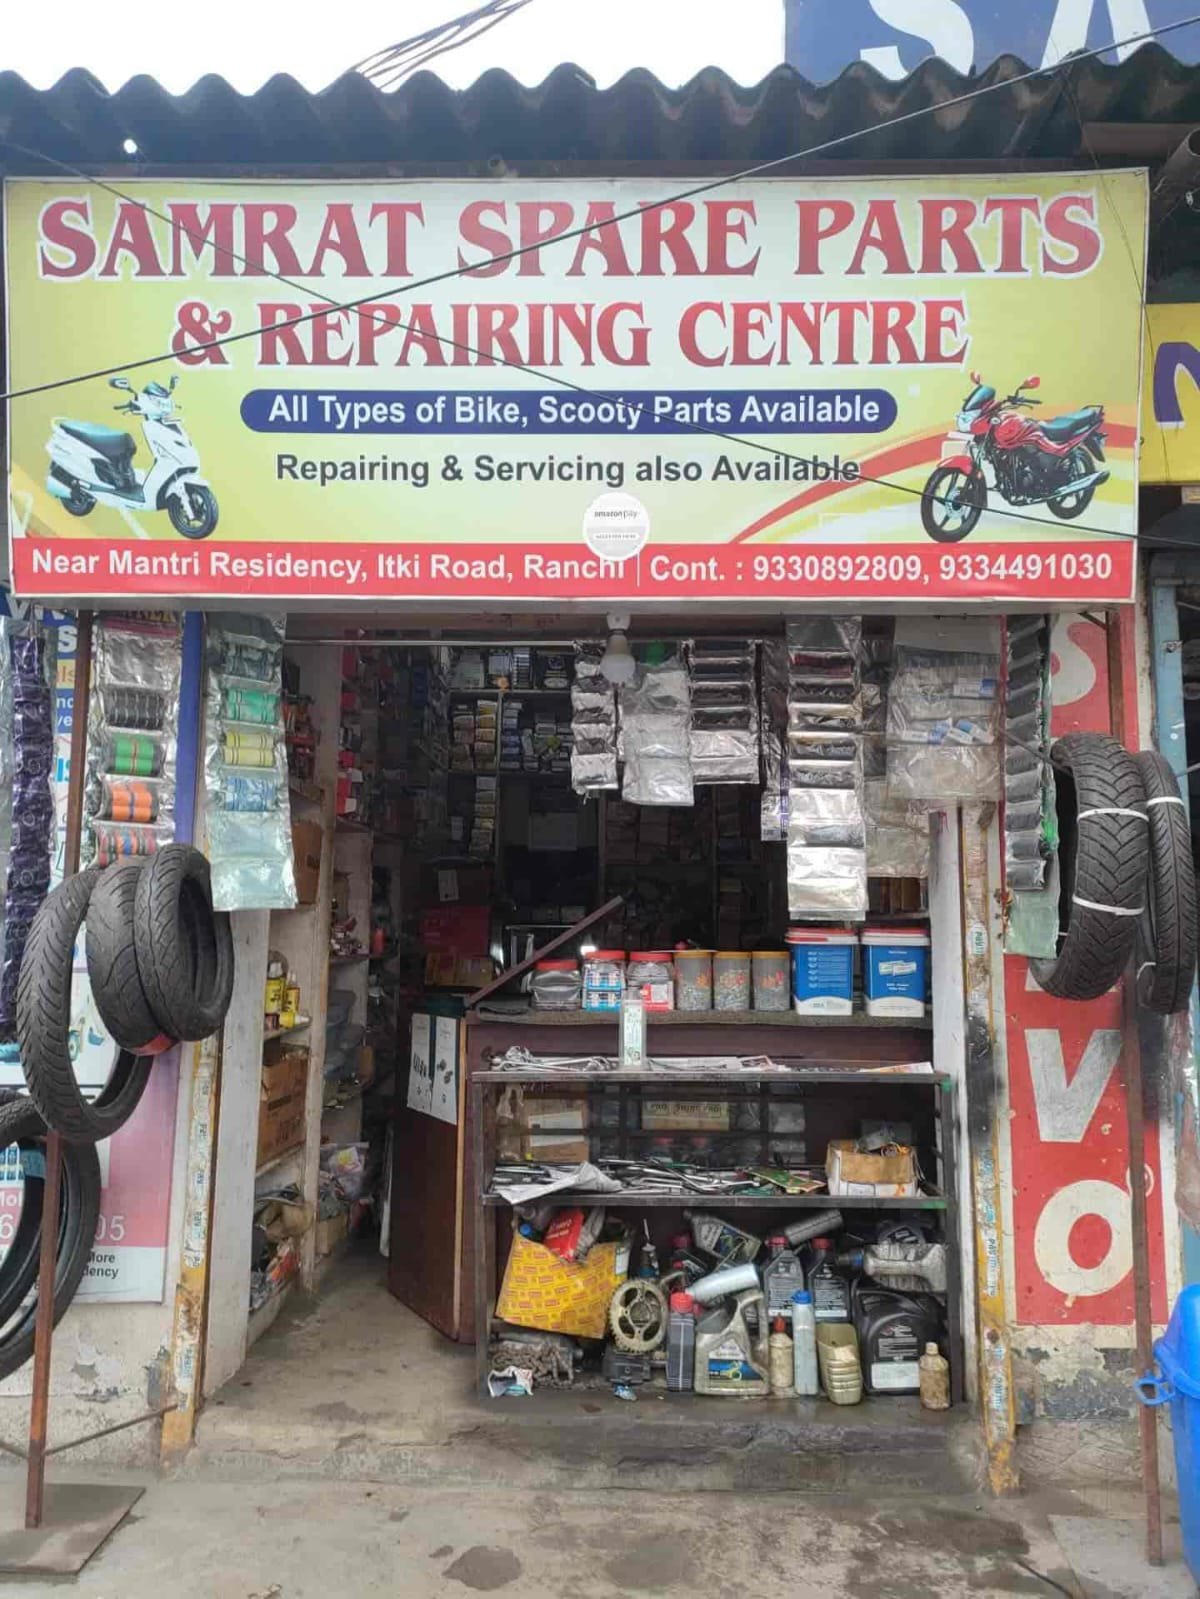 Samrat Spare Parts & Reparing Centre